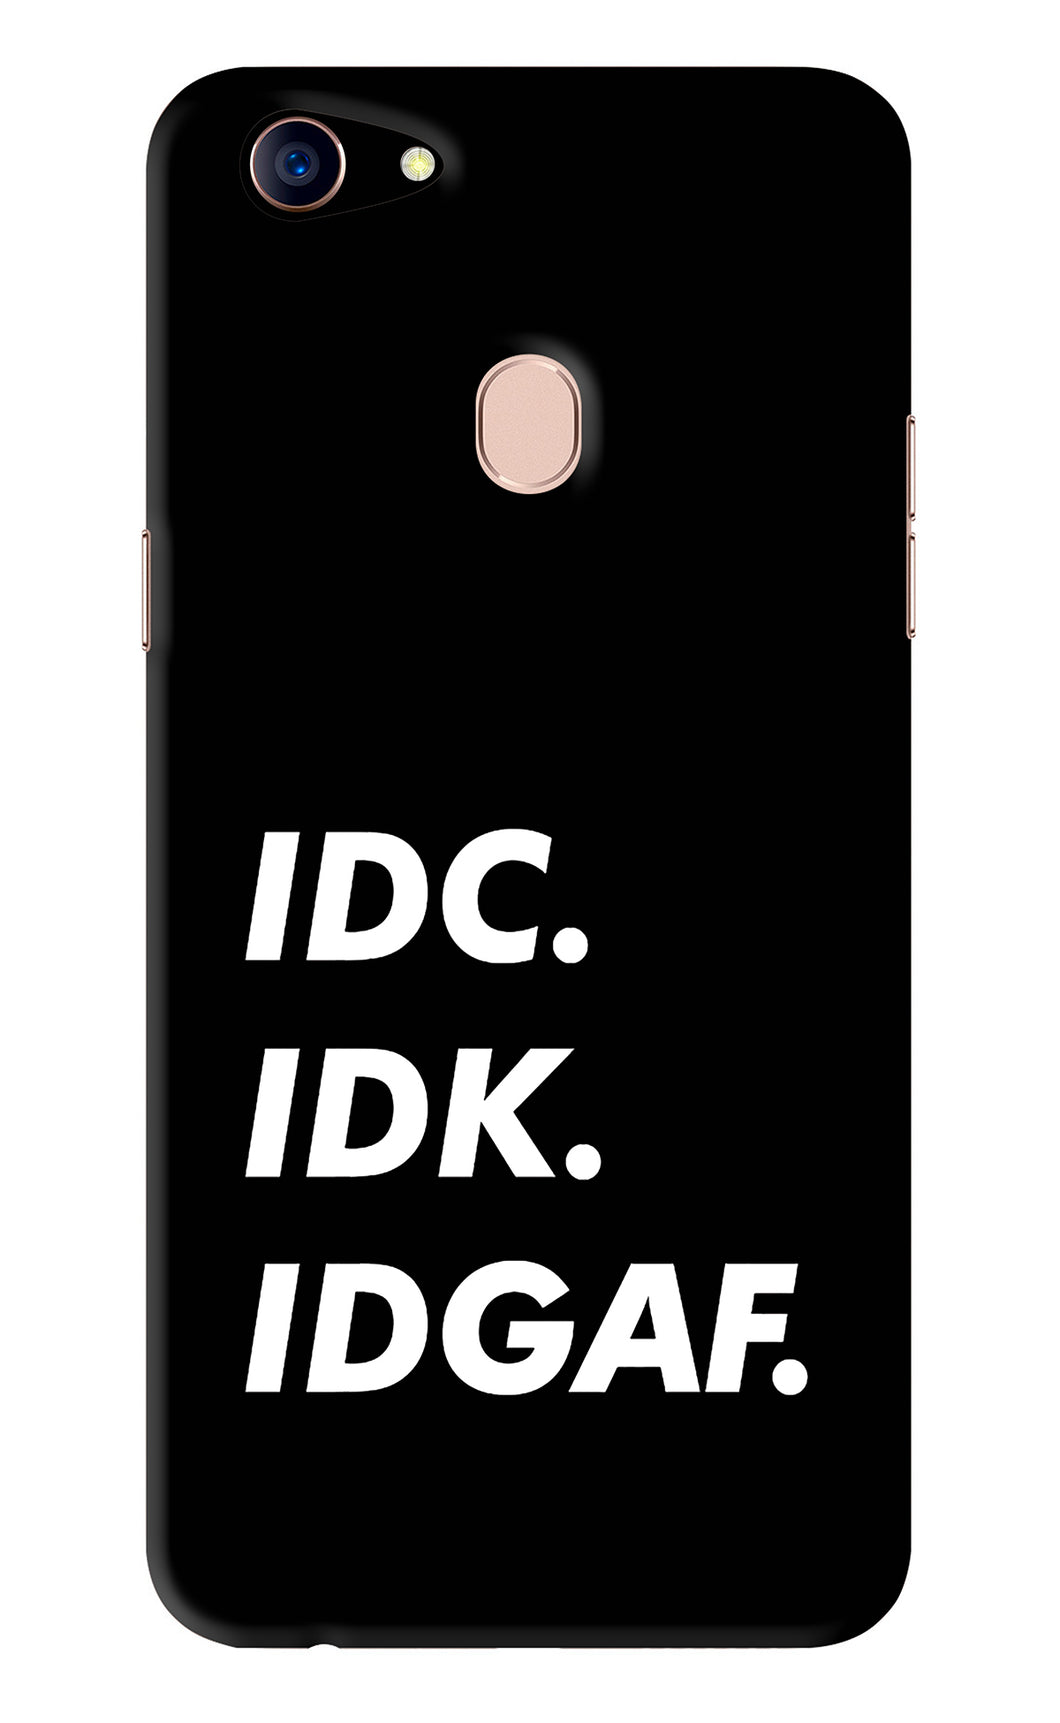 Idc Idk Idgaf Oppo F5 Back Skin Wrap